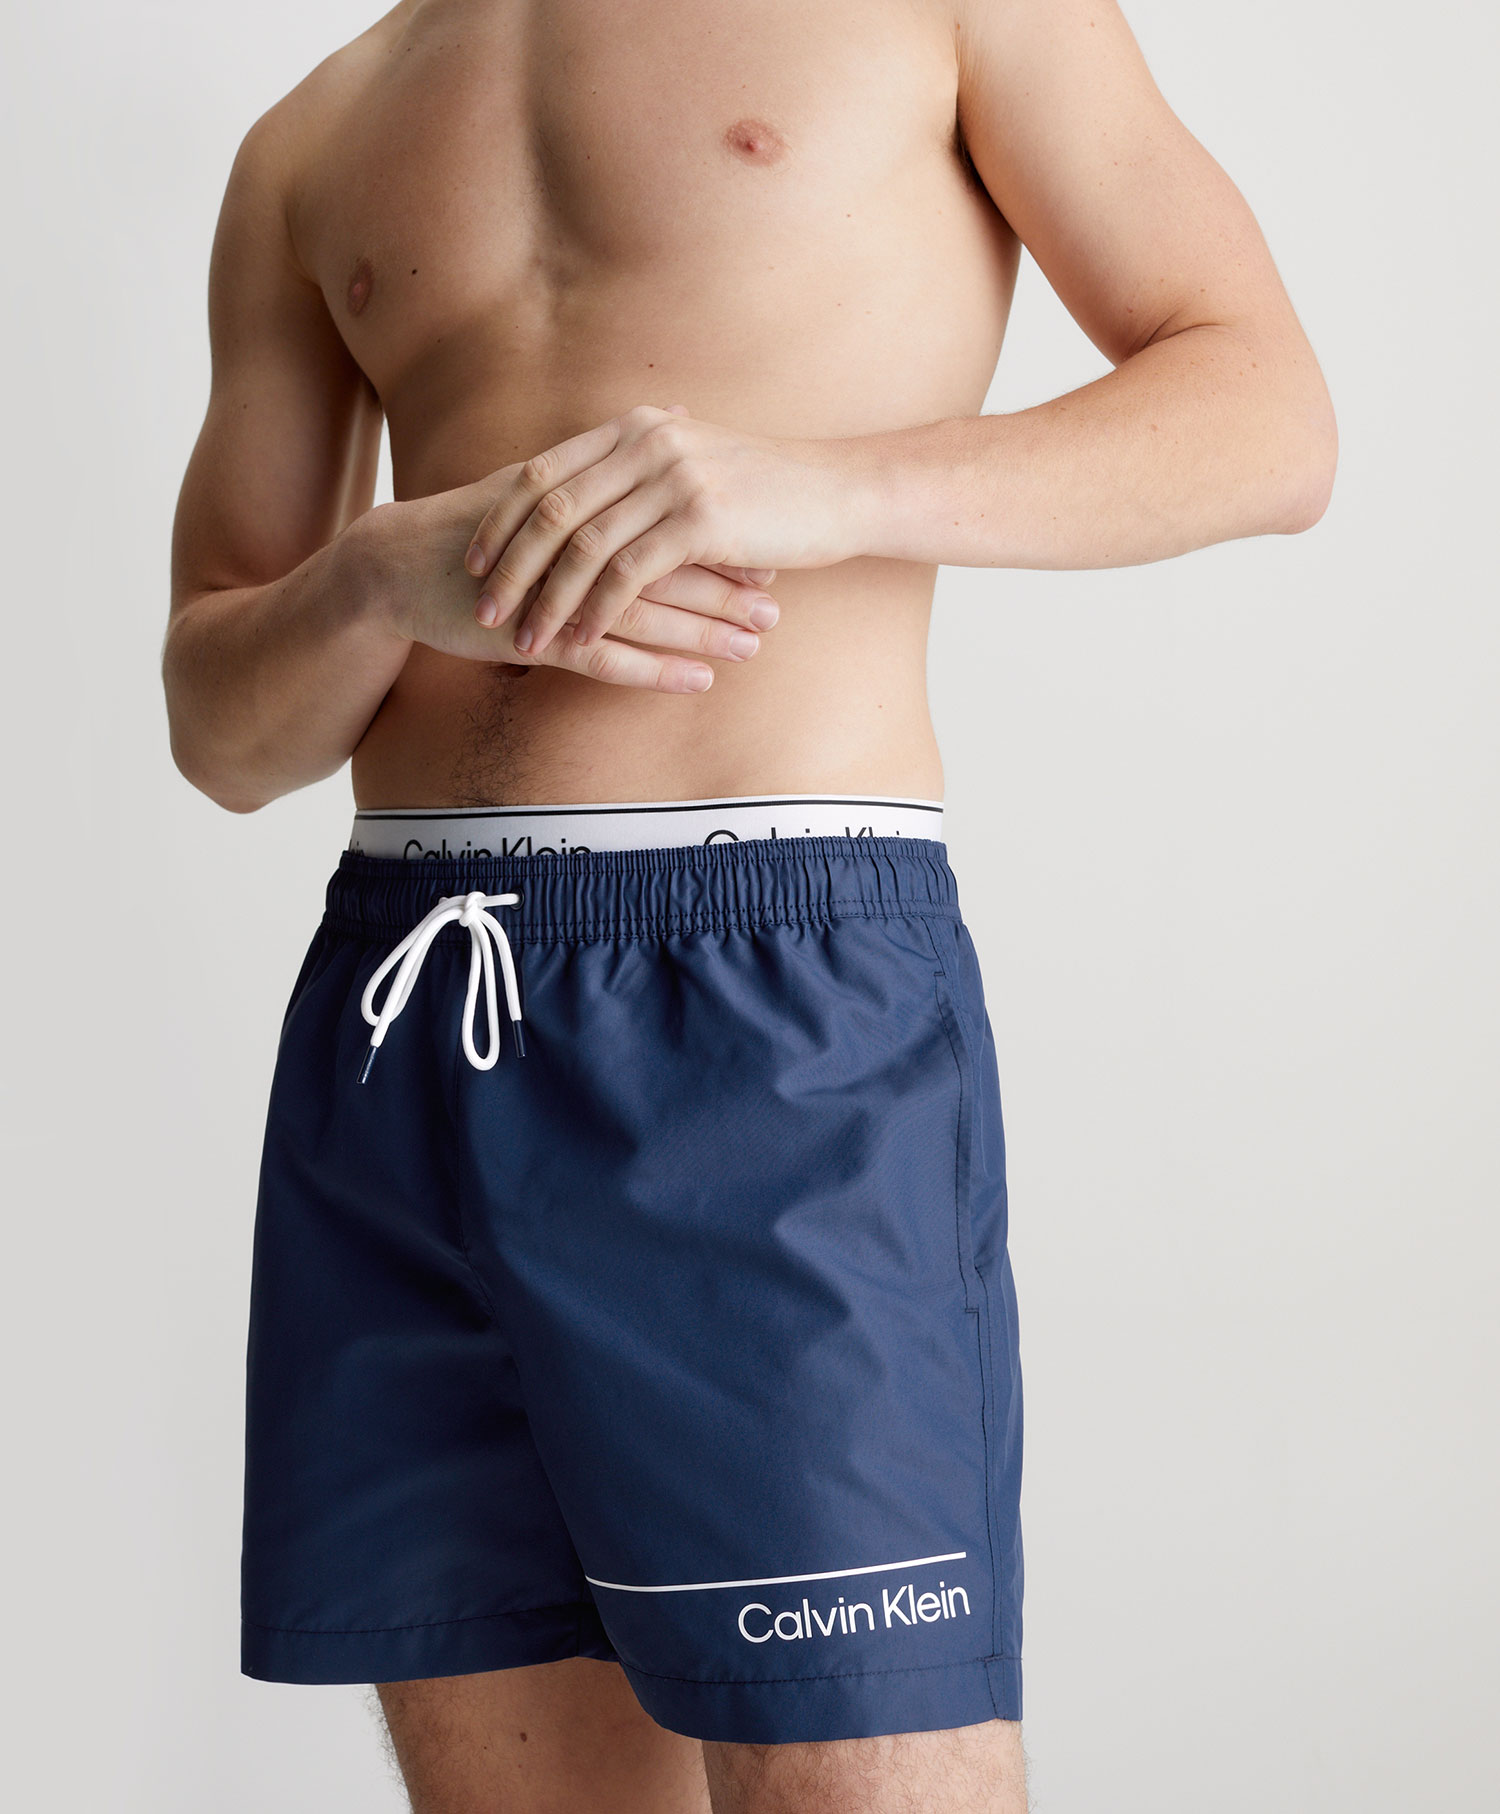 Calvin Klein Shorts Medium Double